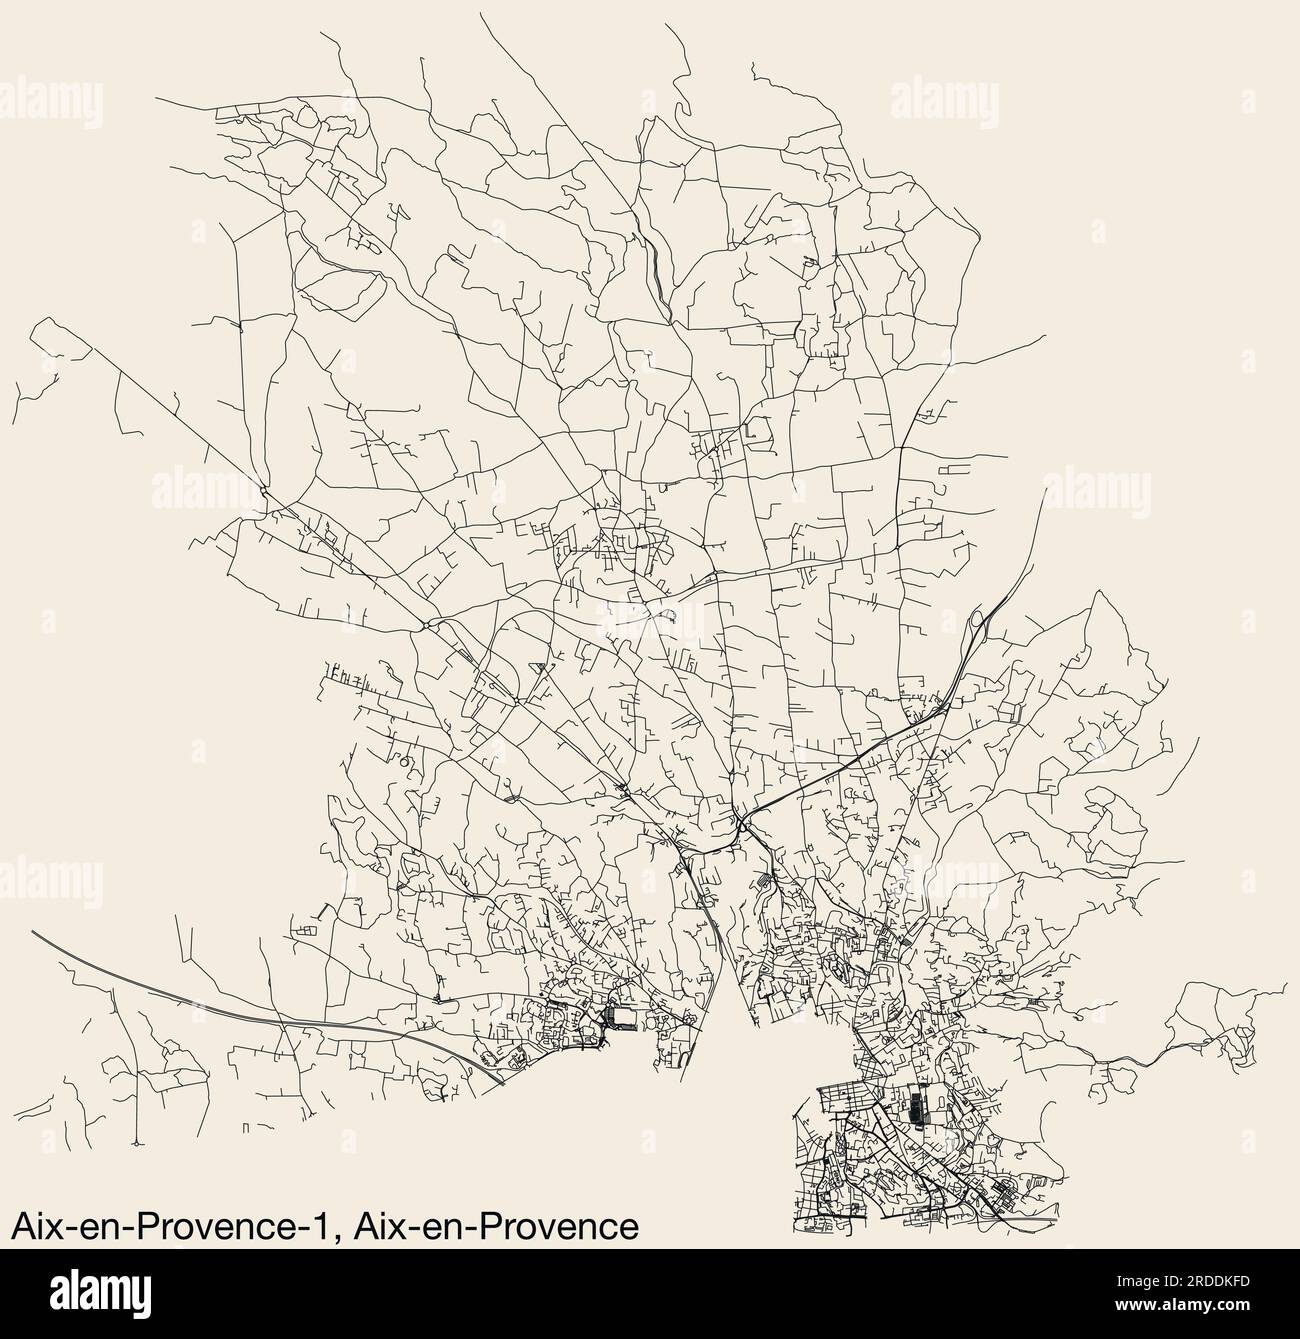 Mappa stradale del CANTONE AIX-EN-PROVENCE-1, AIX-EN-PROVENCE Illustrazione Vettoriale